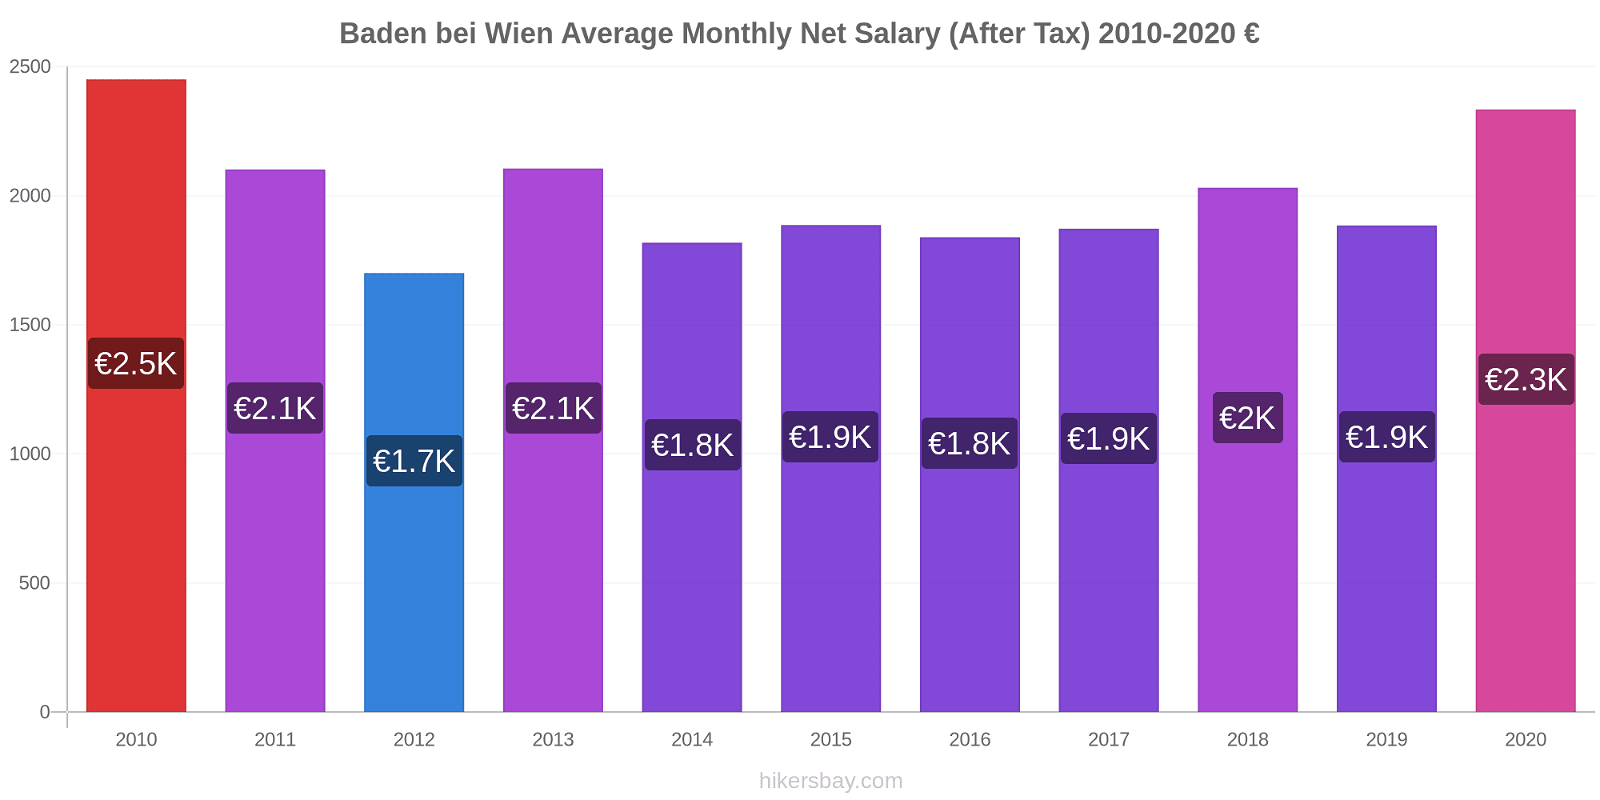 Baden bei Wien price changes Average Monthly Net Salary (After Tax) hikersbay.com